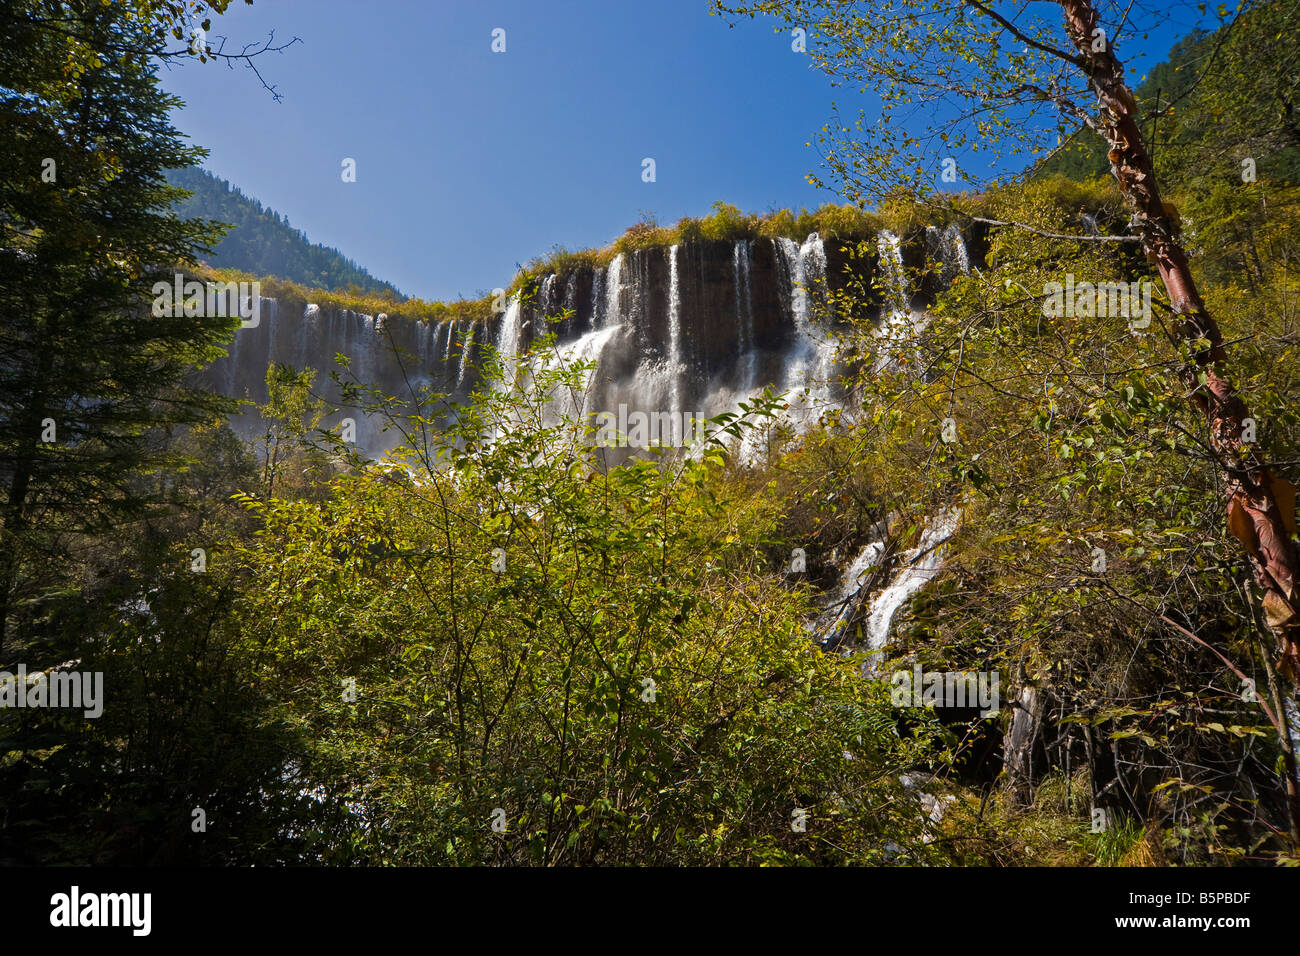 Vielversprechende Bright Bay Wasserfall oder Nuorilang Pubu in Jiuzhaigou Natur behalten Provinz Sichuan China. Kurze Belichtungszeiten. JMH3570 Stockfoto